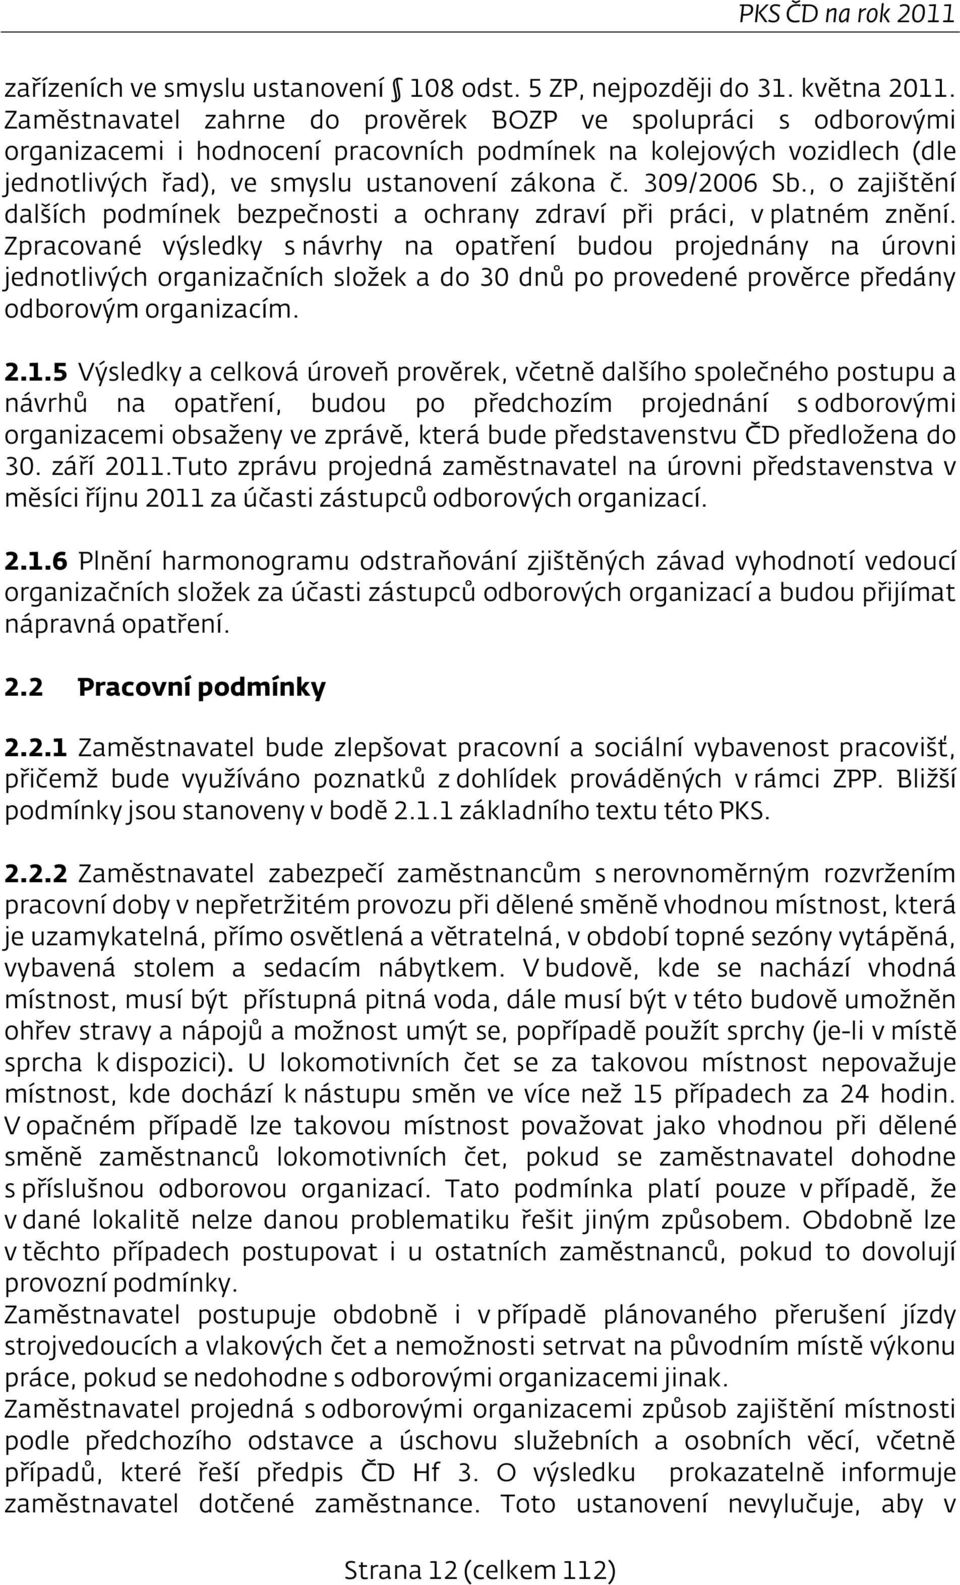 309/2006 Sb., o zajištění dalších podmínek bezpečnosti a ochrany zdraví při práci, v platném znění.